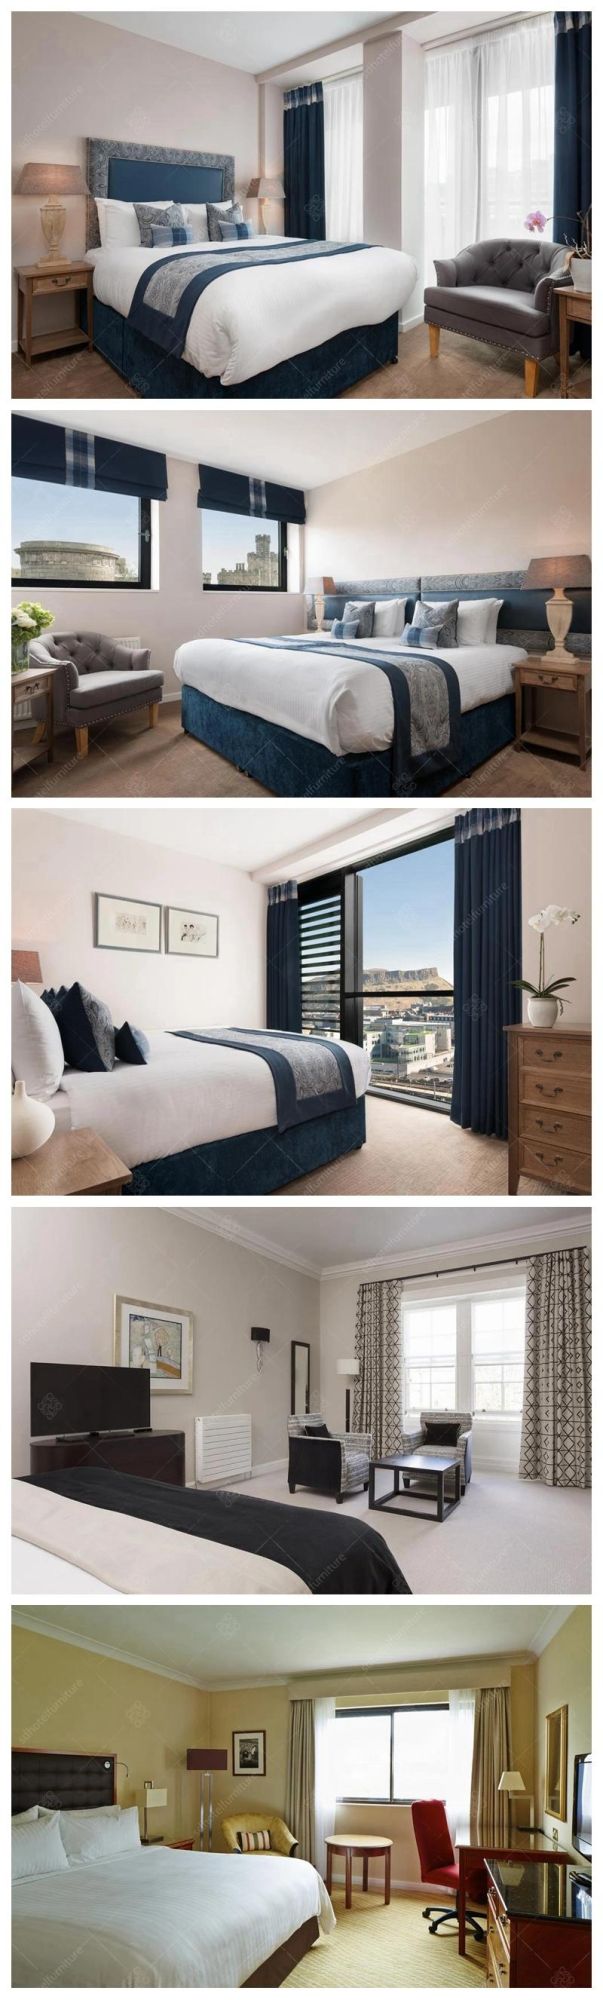 Modern Hotel King Size Bedroom Furniture Sets for Sale